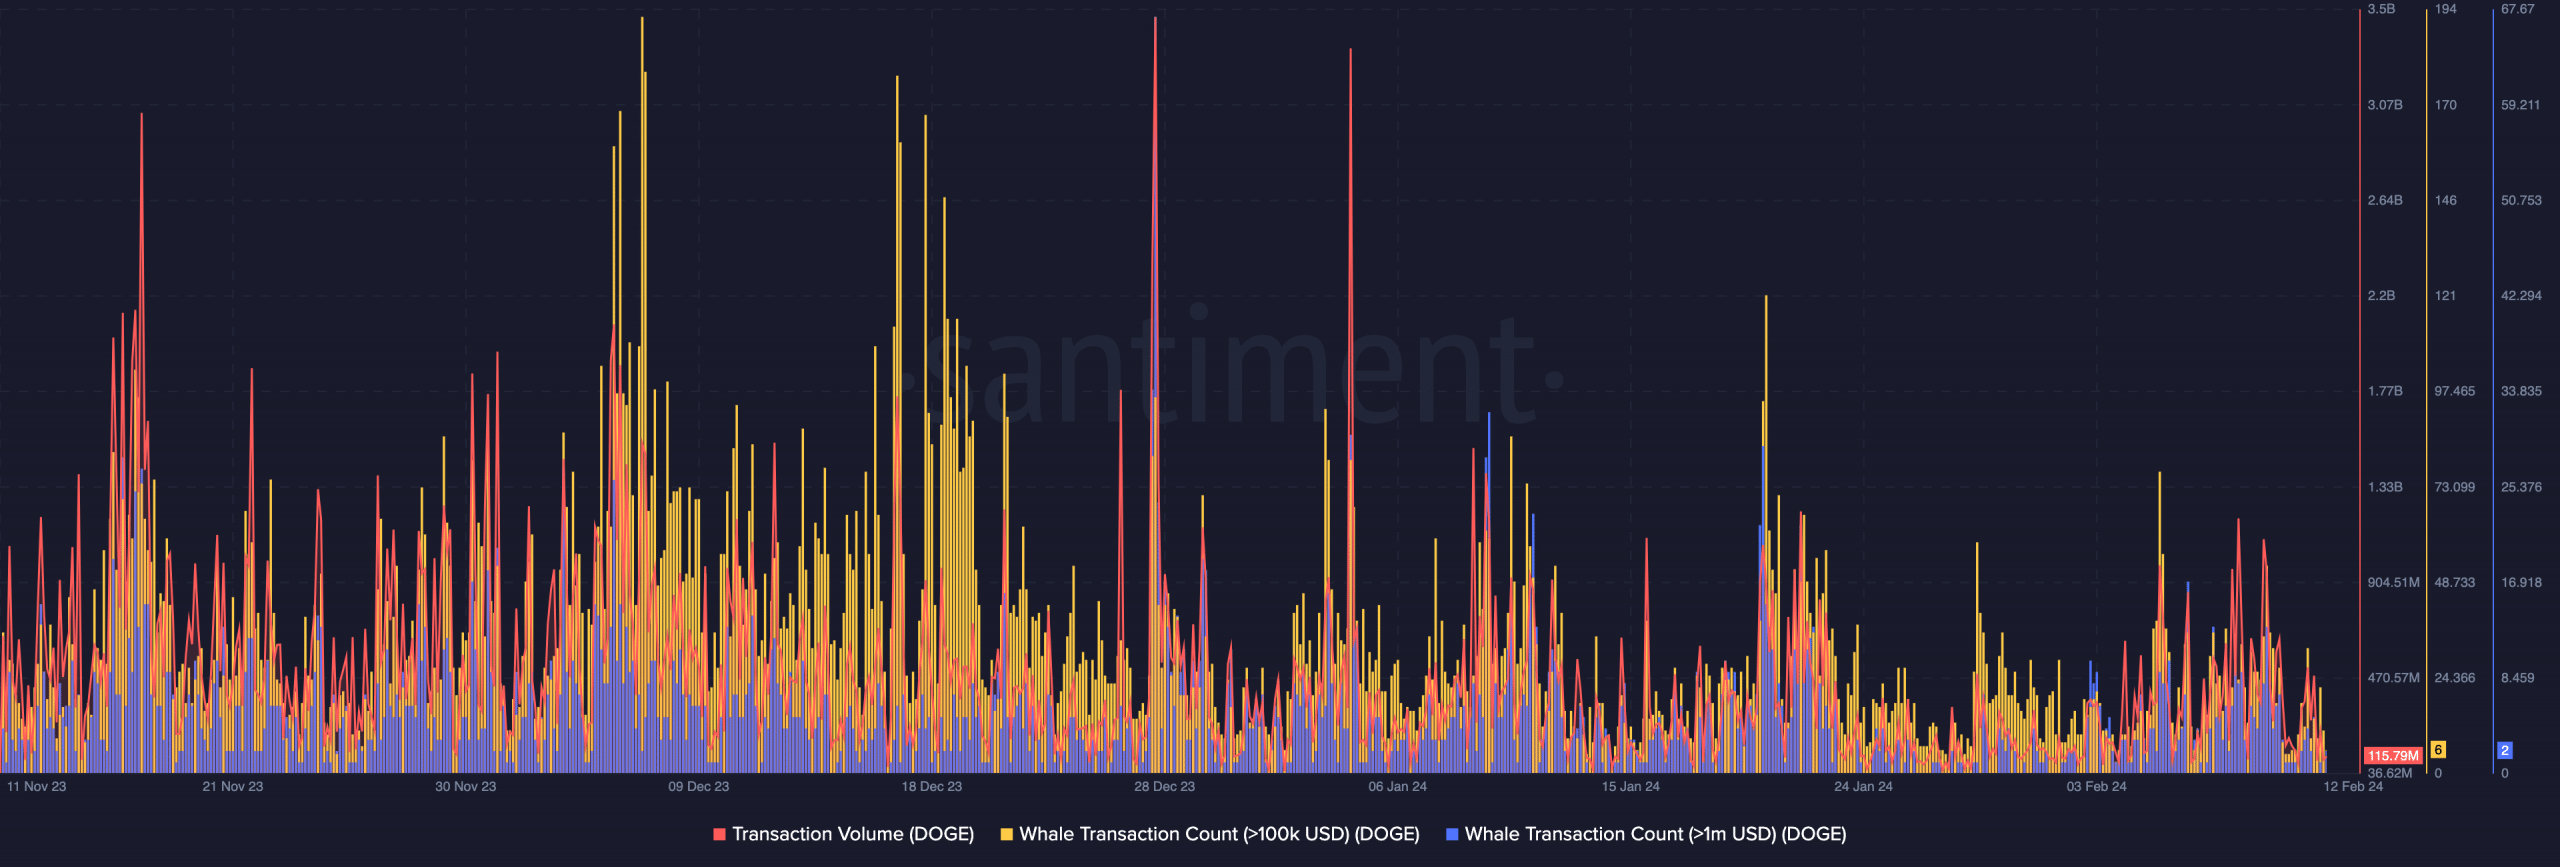 datos en cadena que muestran la caída del volumen de Dogecoin y las transacciones de ballenas